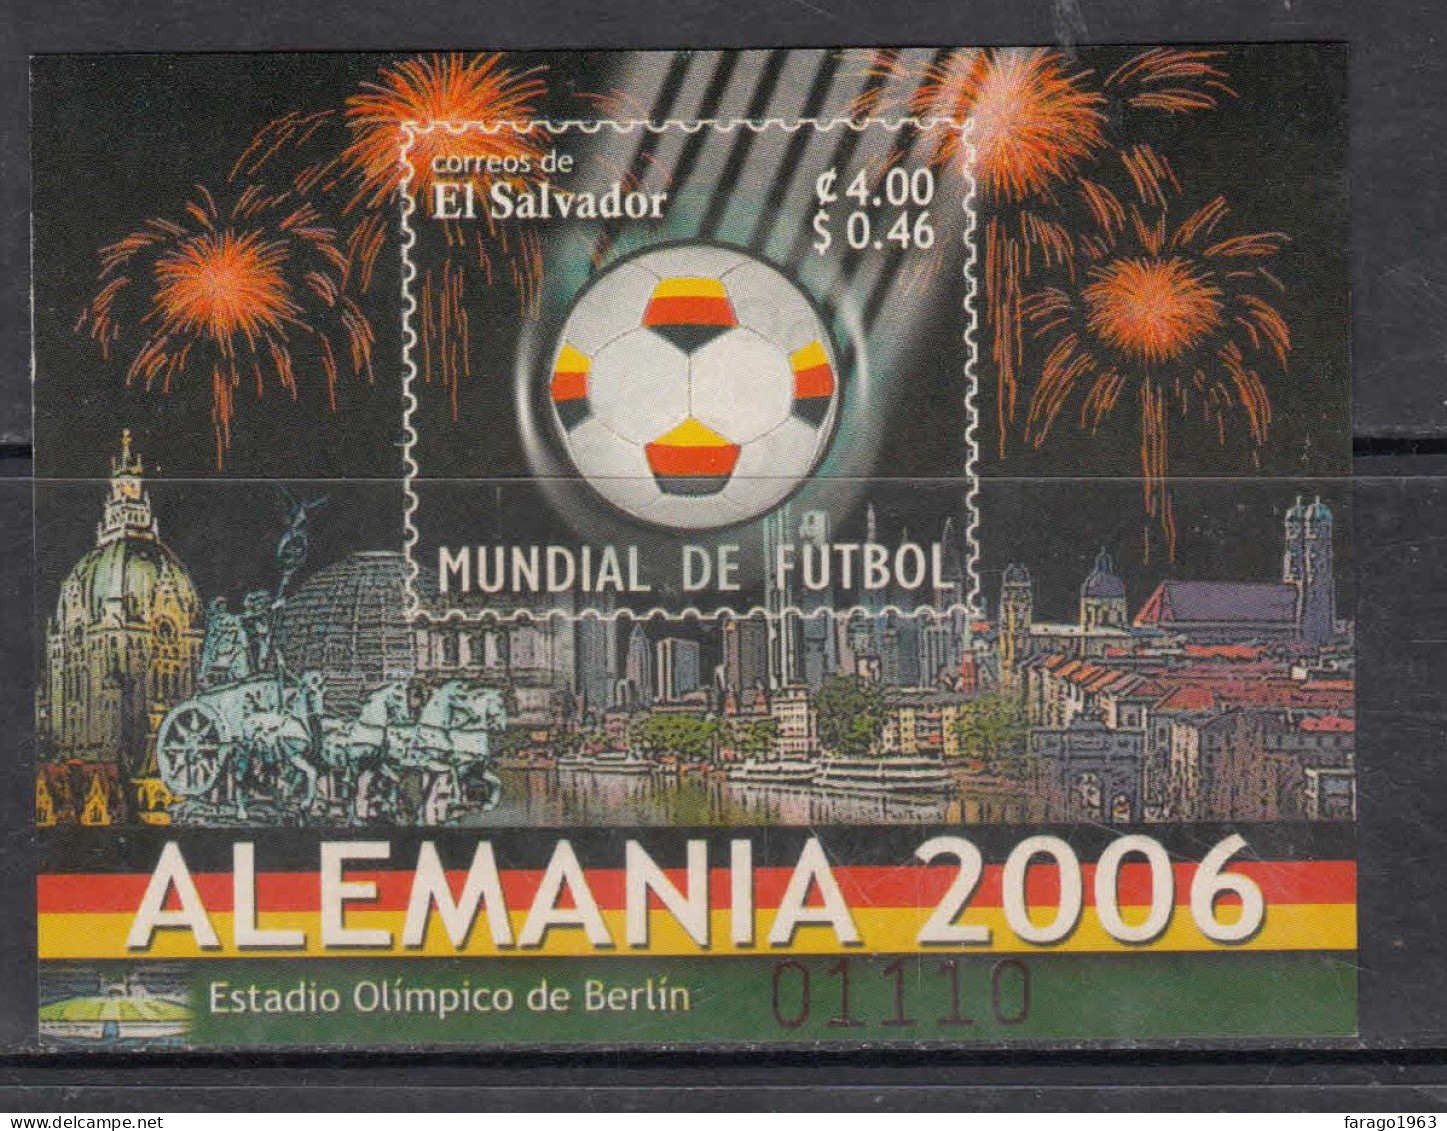 2006 El Salvador World Cup Football Germany Souvenir Sheet MNH - Salvador